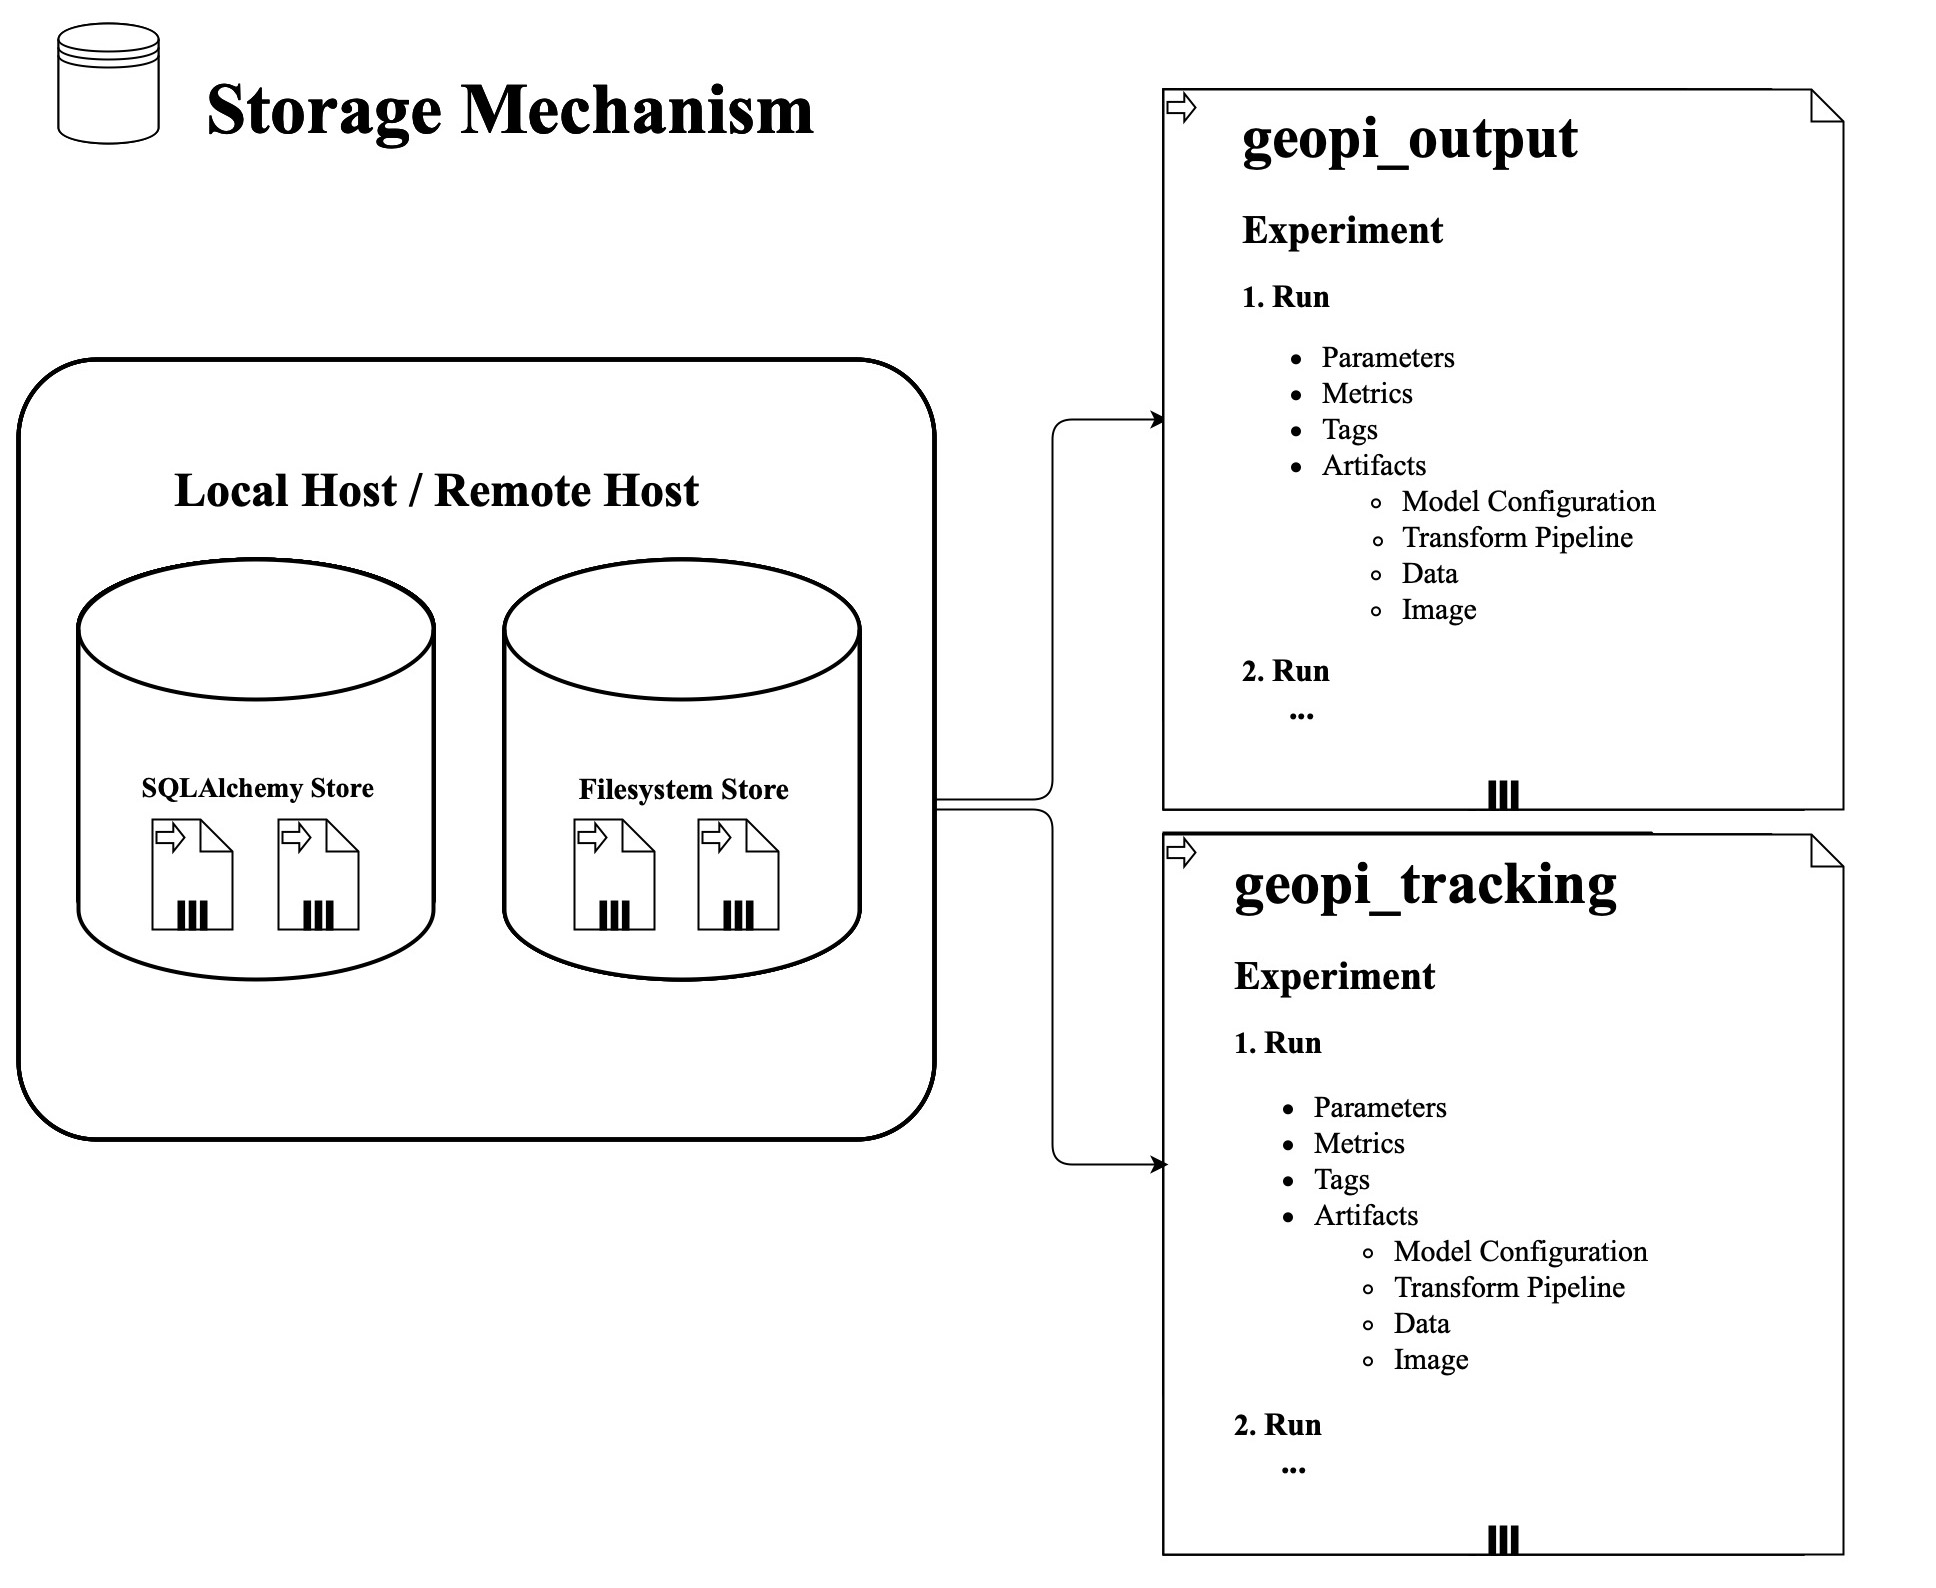 Storage Mechanism